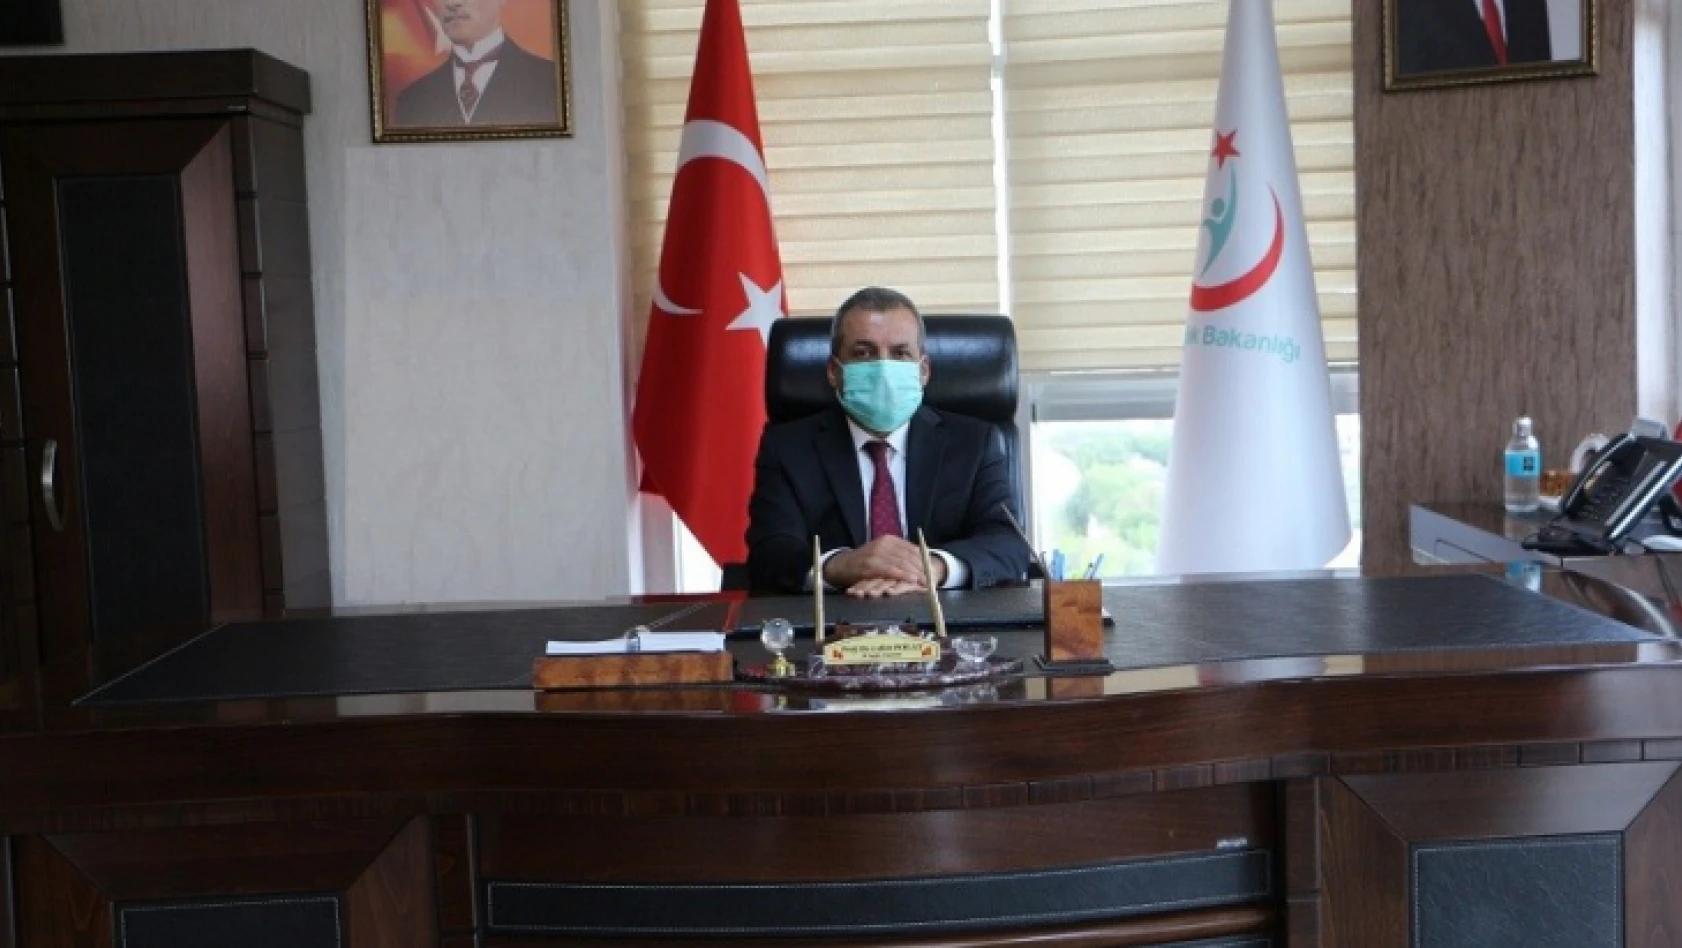 Vakaların arttığı Elazığ'da İl Sağlık Müdürü Prof. Dr. Polat, vatandaşları uyardı